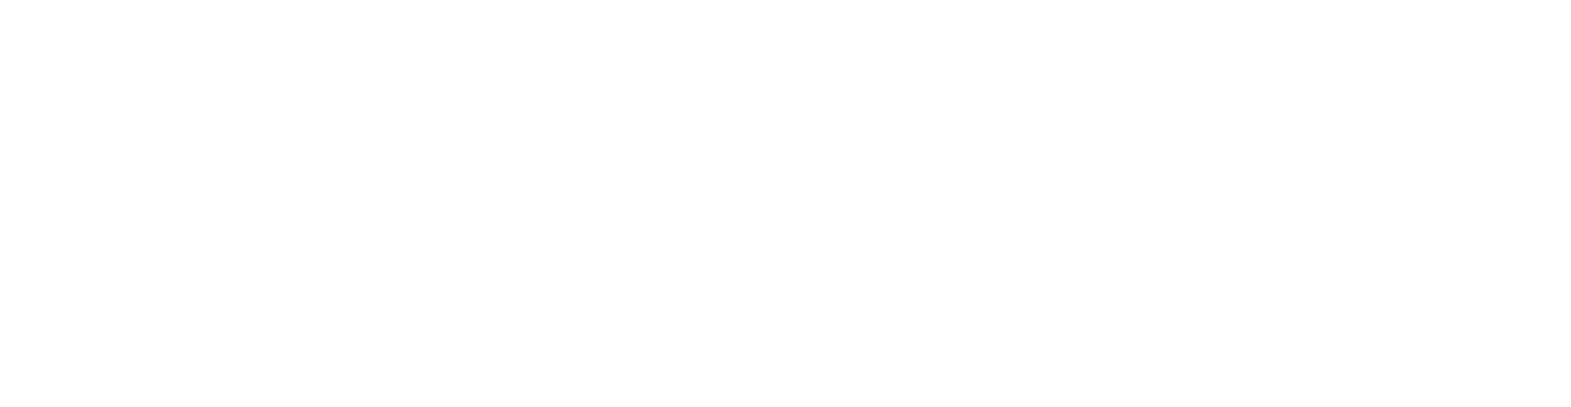 Kleinhans' Gift To Buffalo